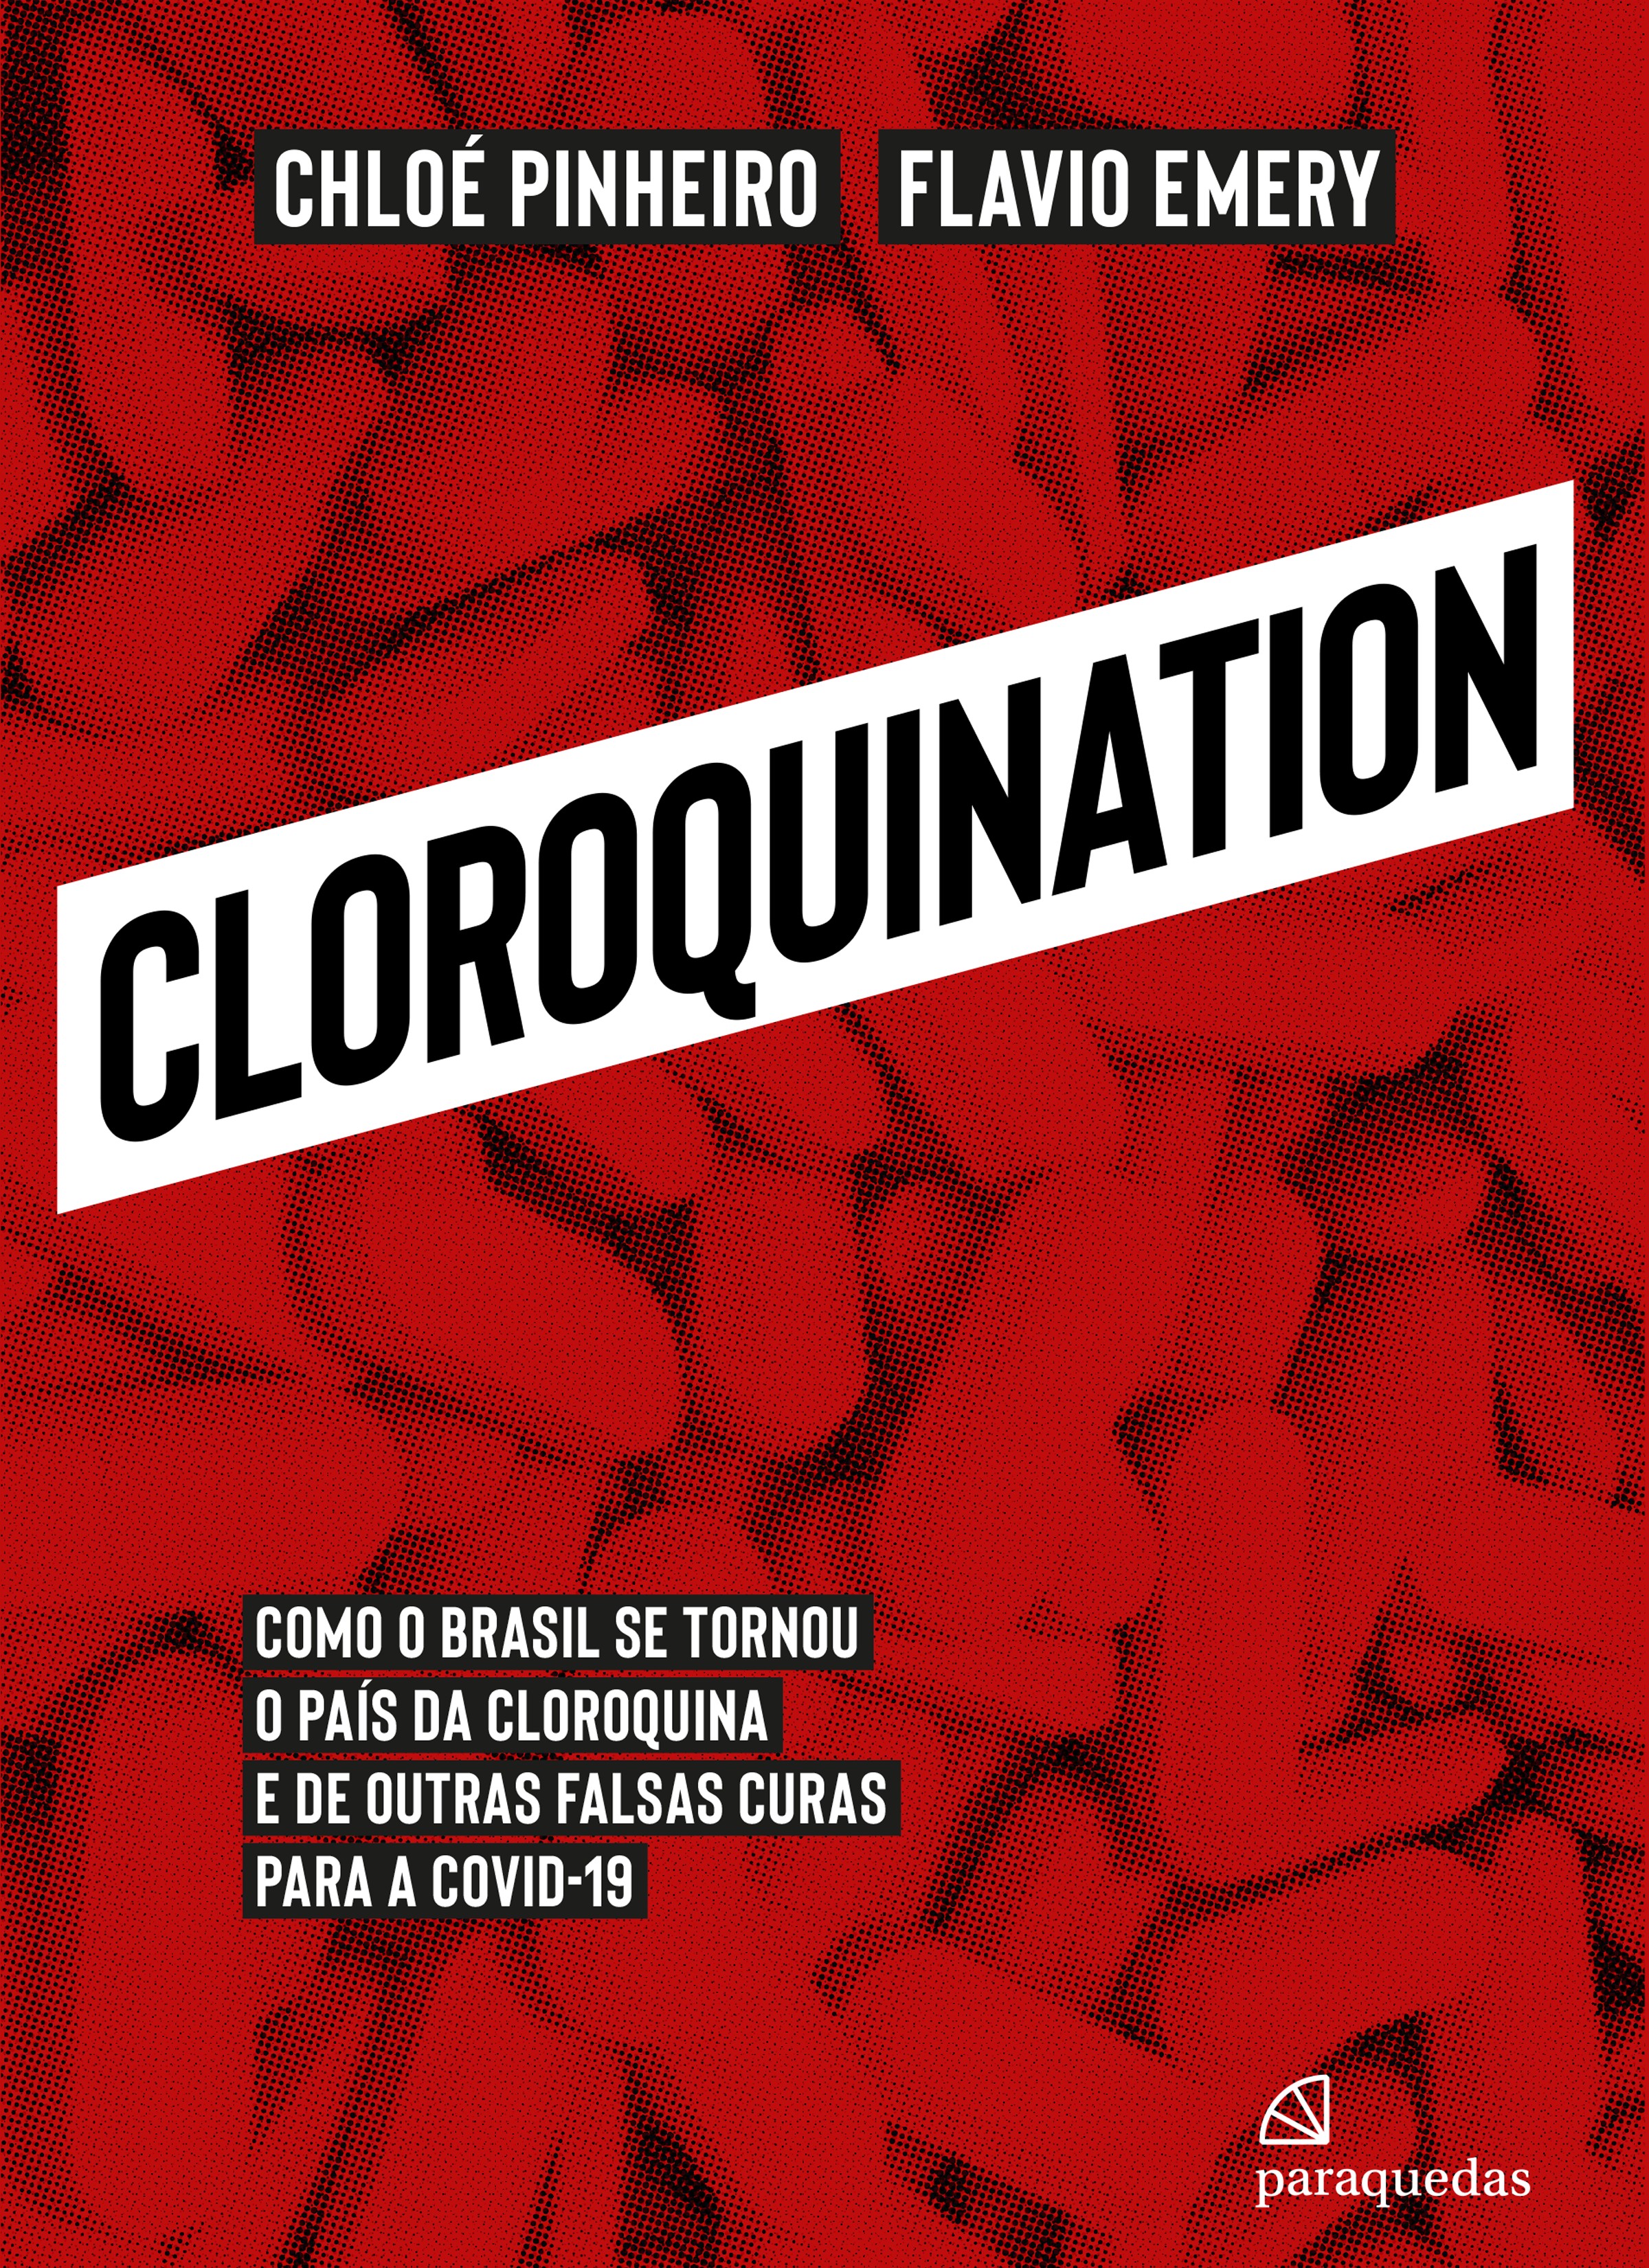 Cloroquination: como o Brasil se tornou o país da cloroquina e de outras falsas curas para a Covid-19, por Chloé Pinheiro e Flavio Emery [Paraquedas, 374 páginas, R$ 79,90 (em pré-venda)] (Foto: Divulgação)